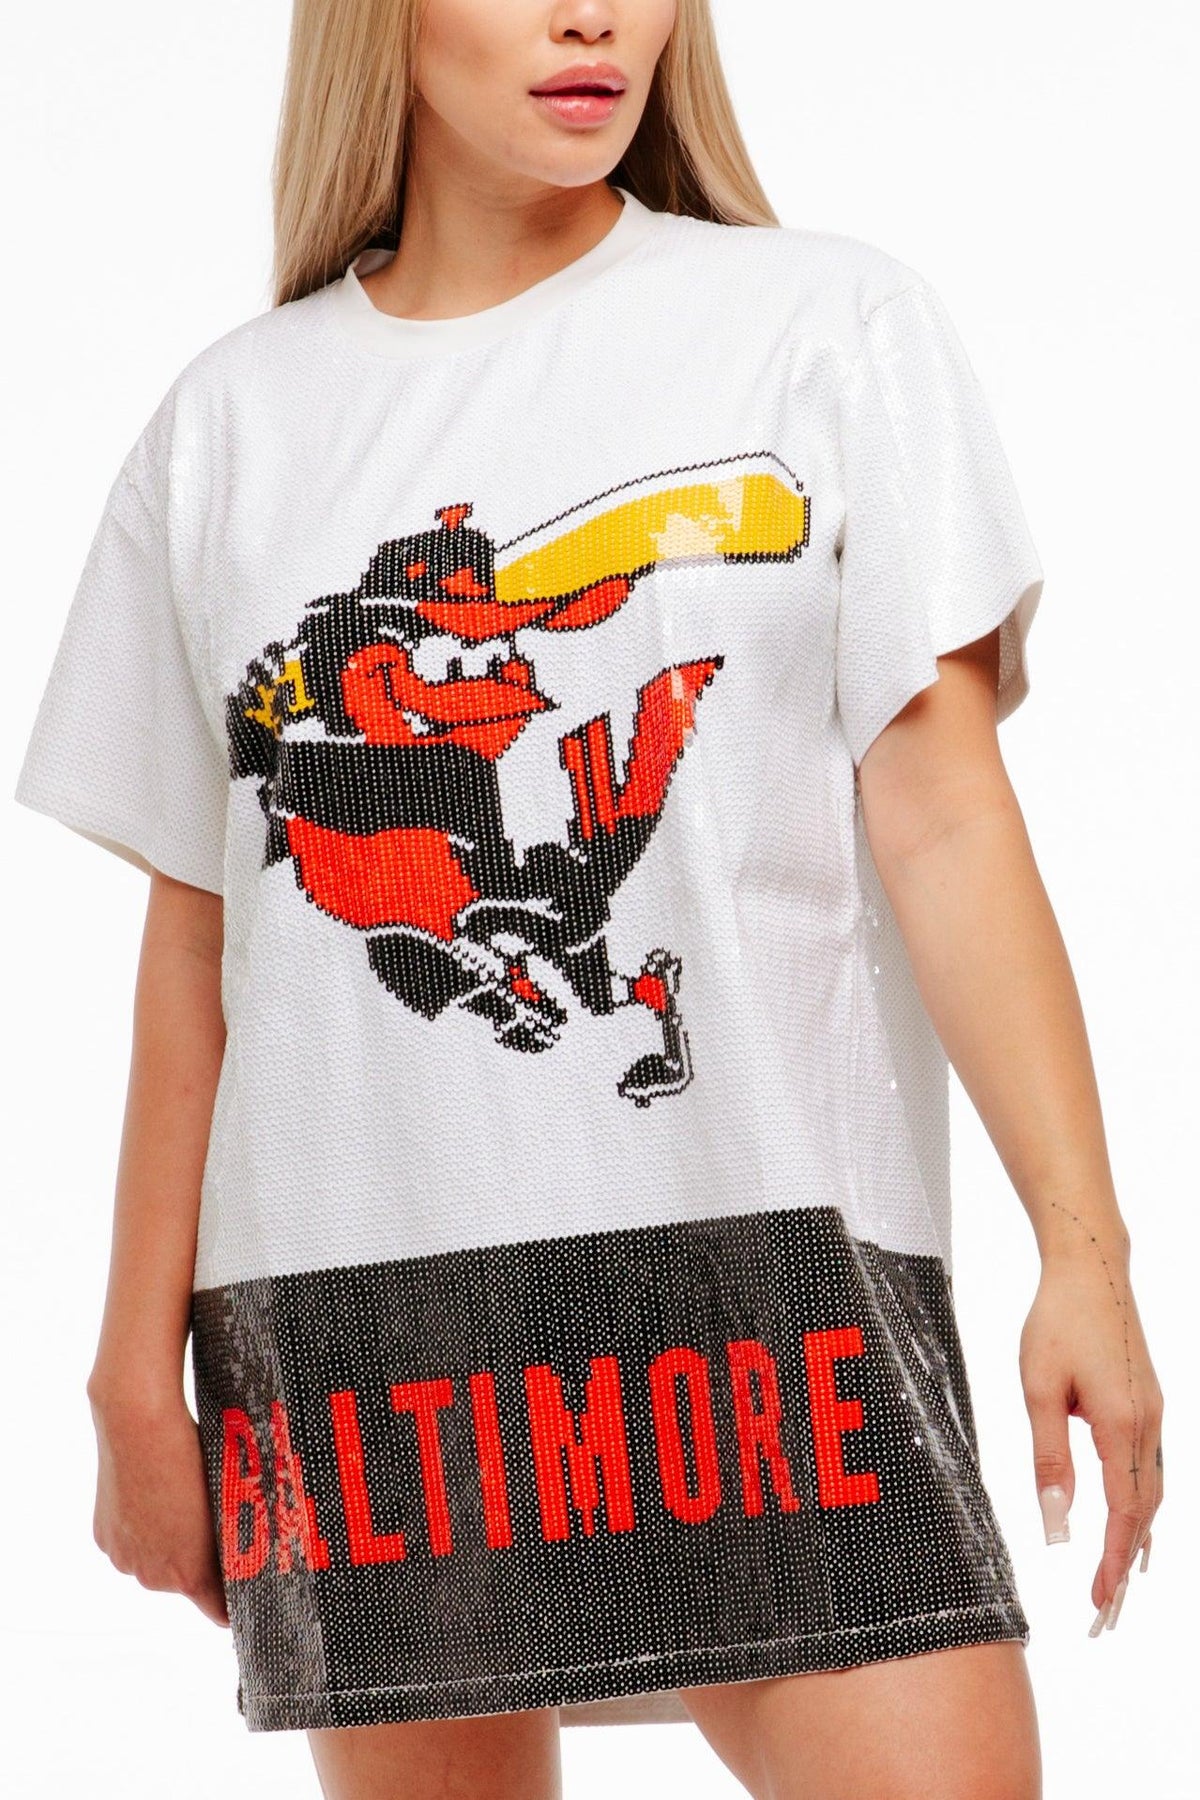 Baltimore Baseball Sequin Dress - SEQUIN FANS